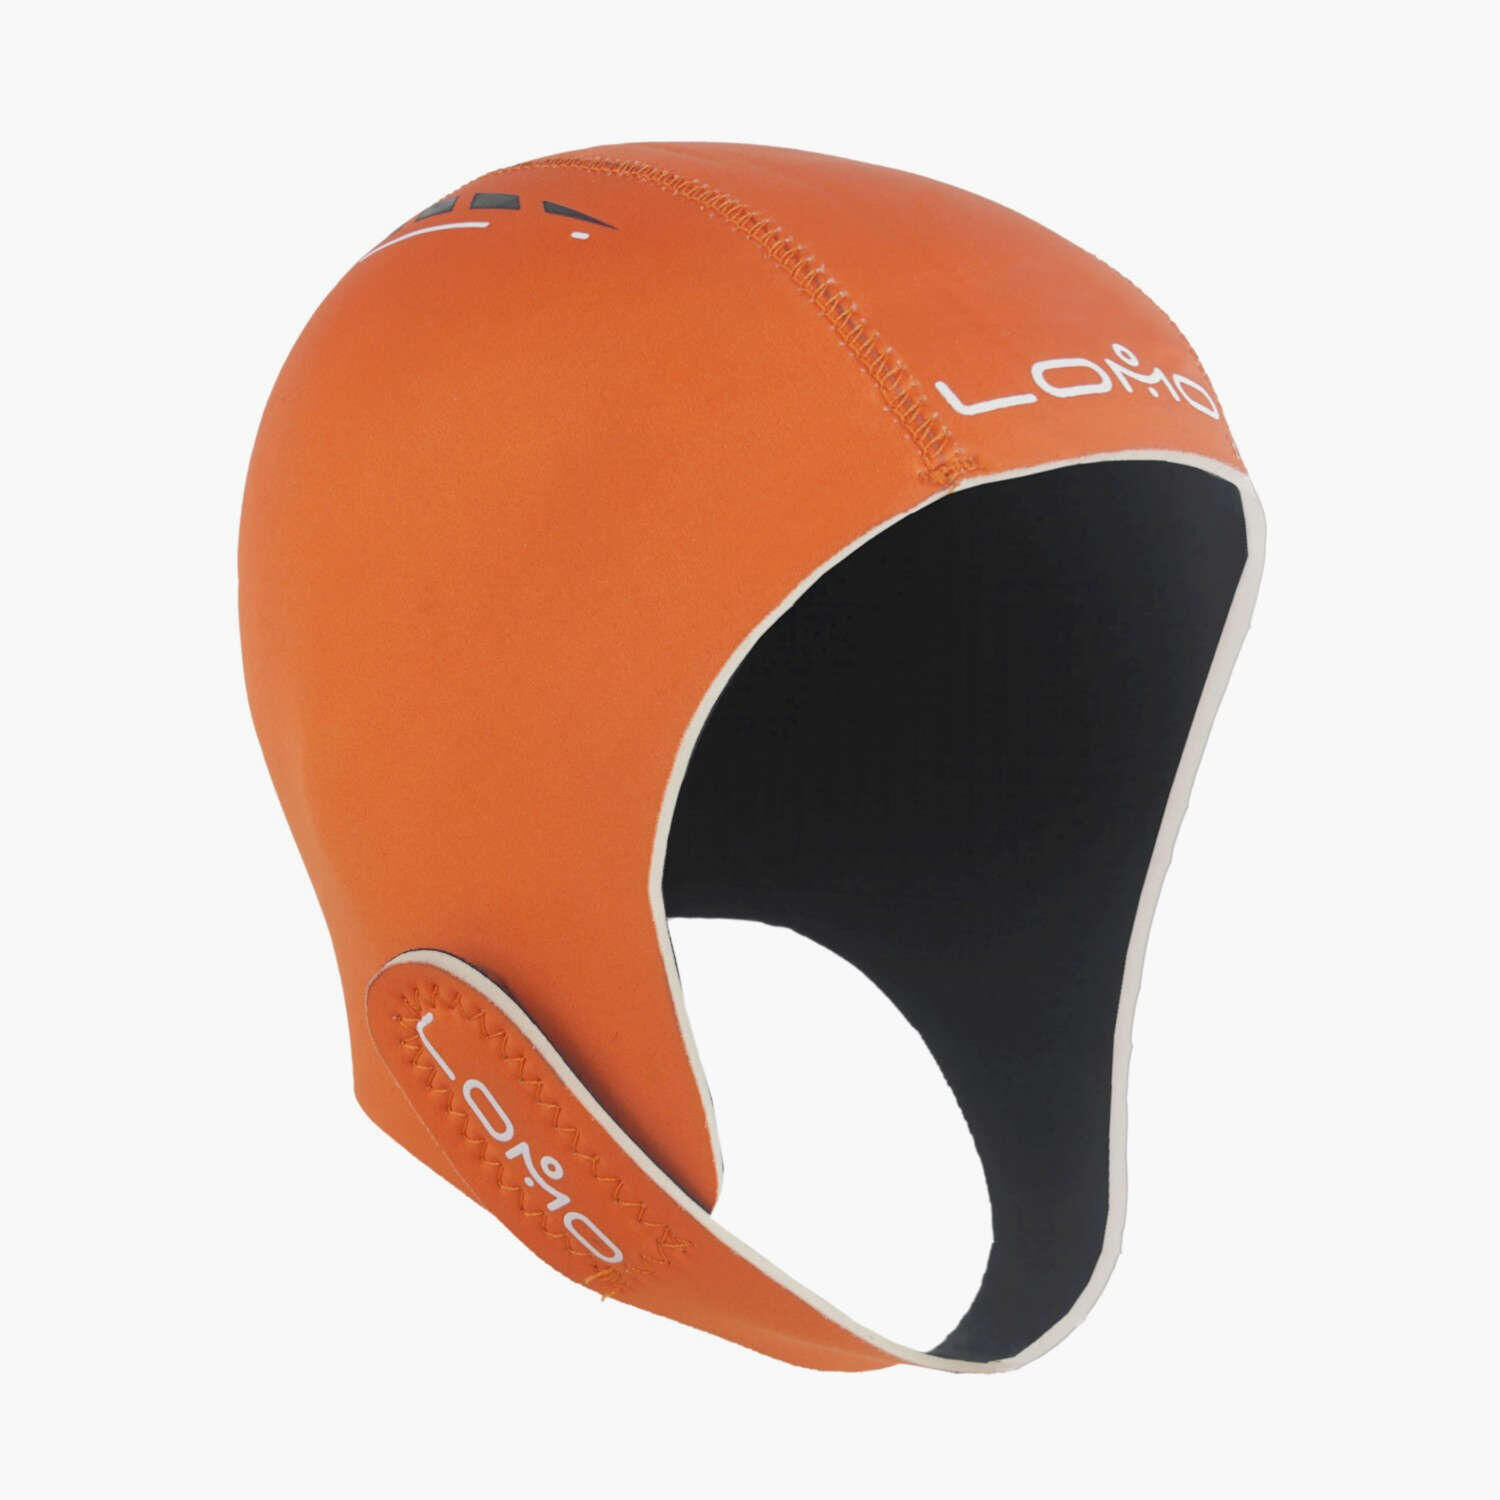 LOMO Lomo Neoprene Swimming Cap - Orange